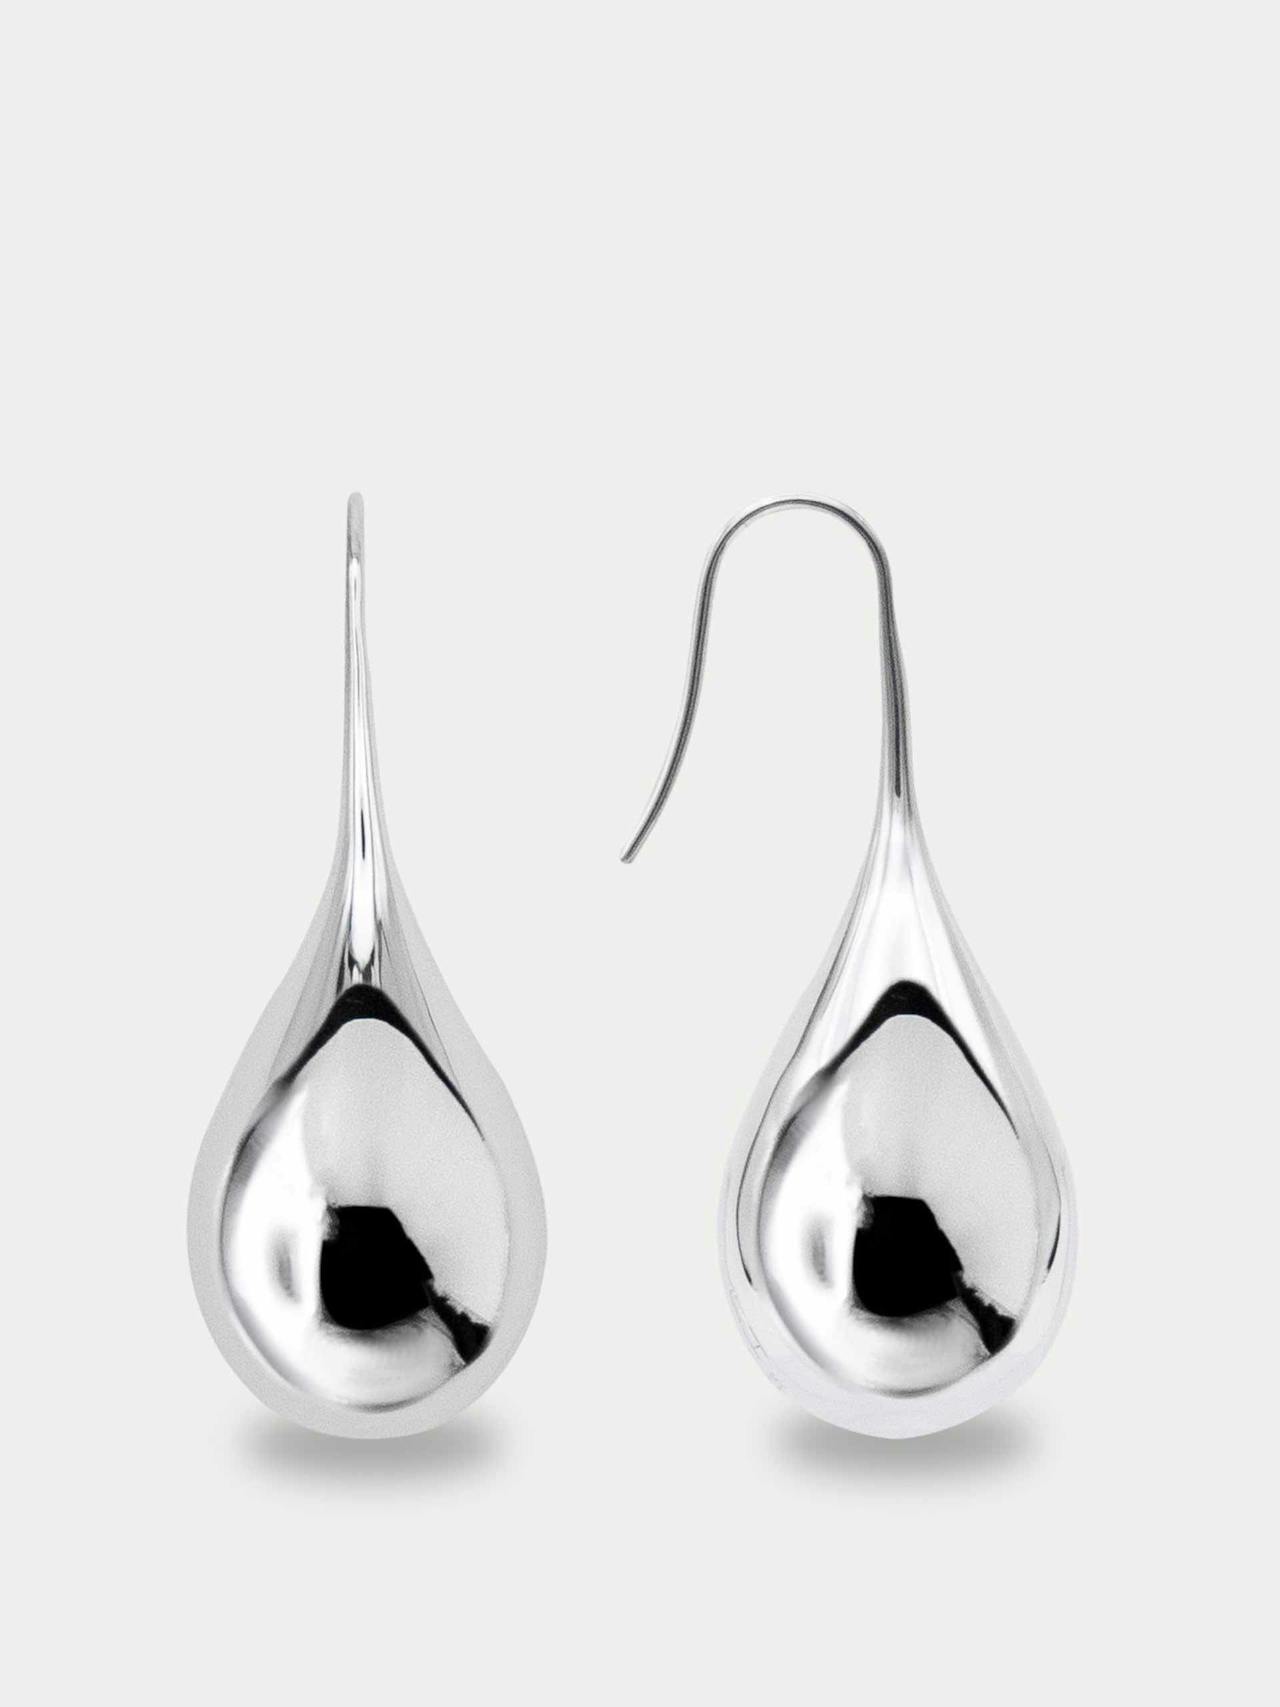 Large drop earrings in sterling silver